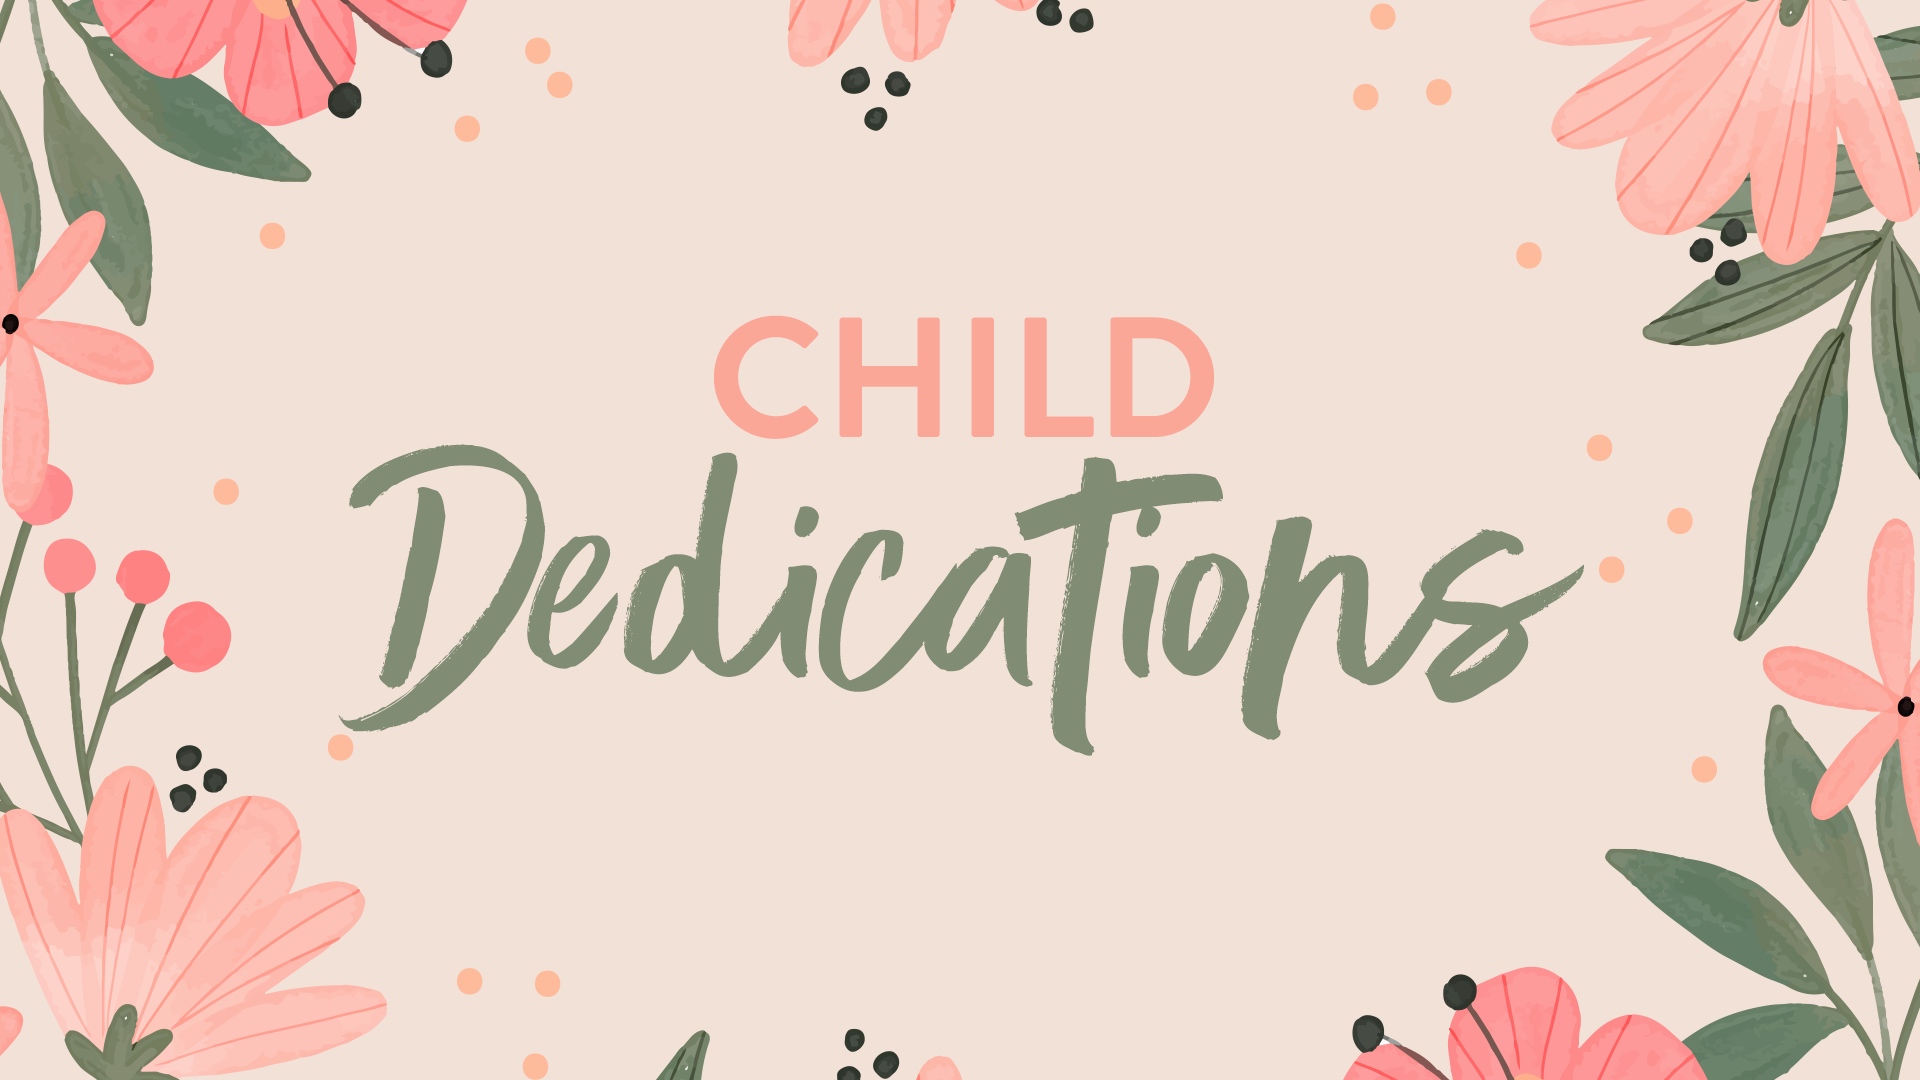 Child Dedication 2023 Title Slide image